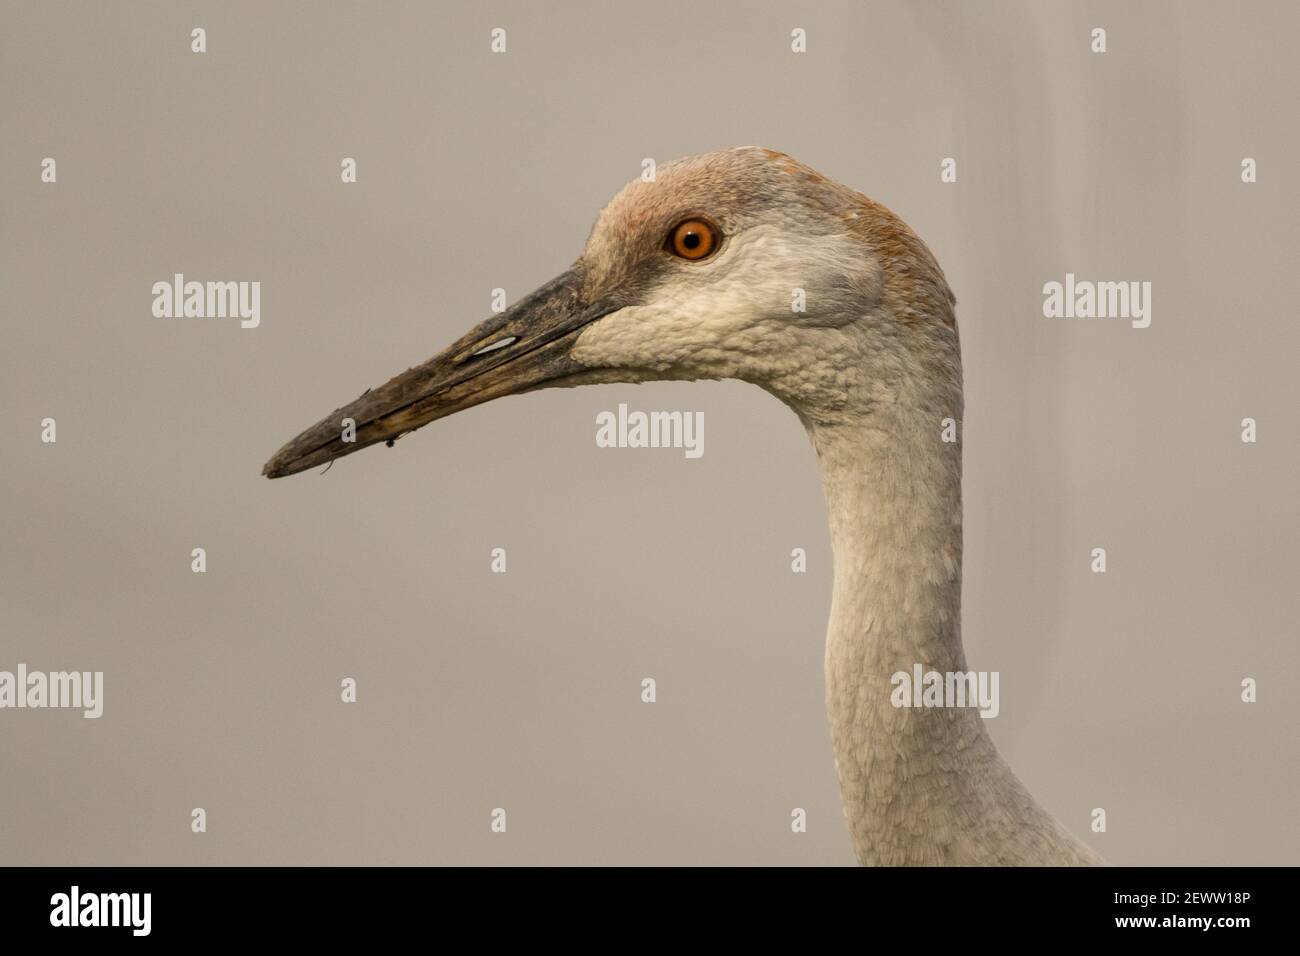 Close-up portrait of a juvenile sandhill crane, Antigone canadensis. Stock Photo